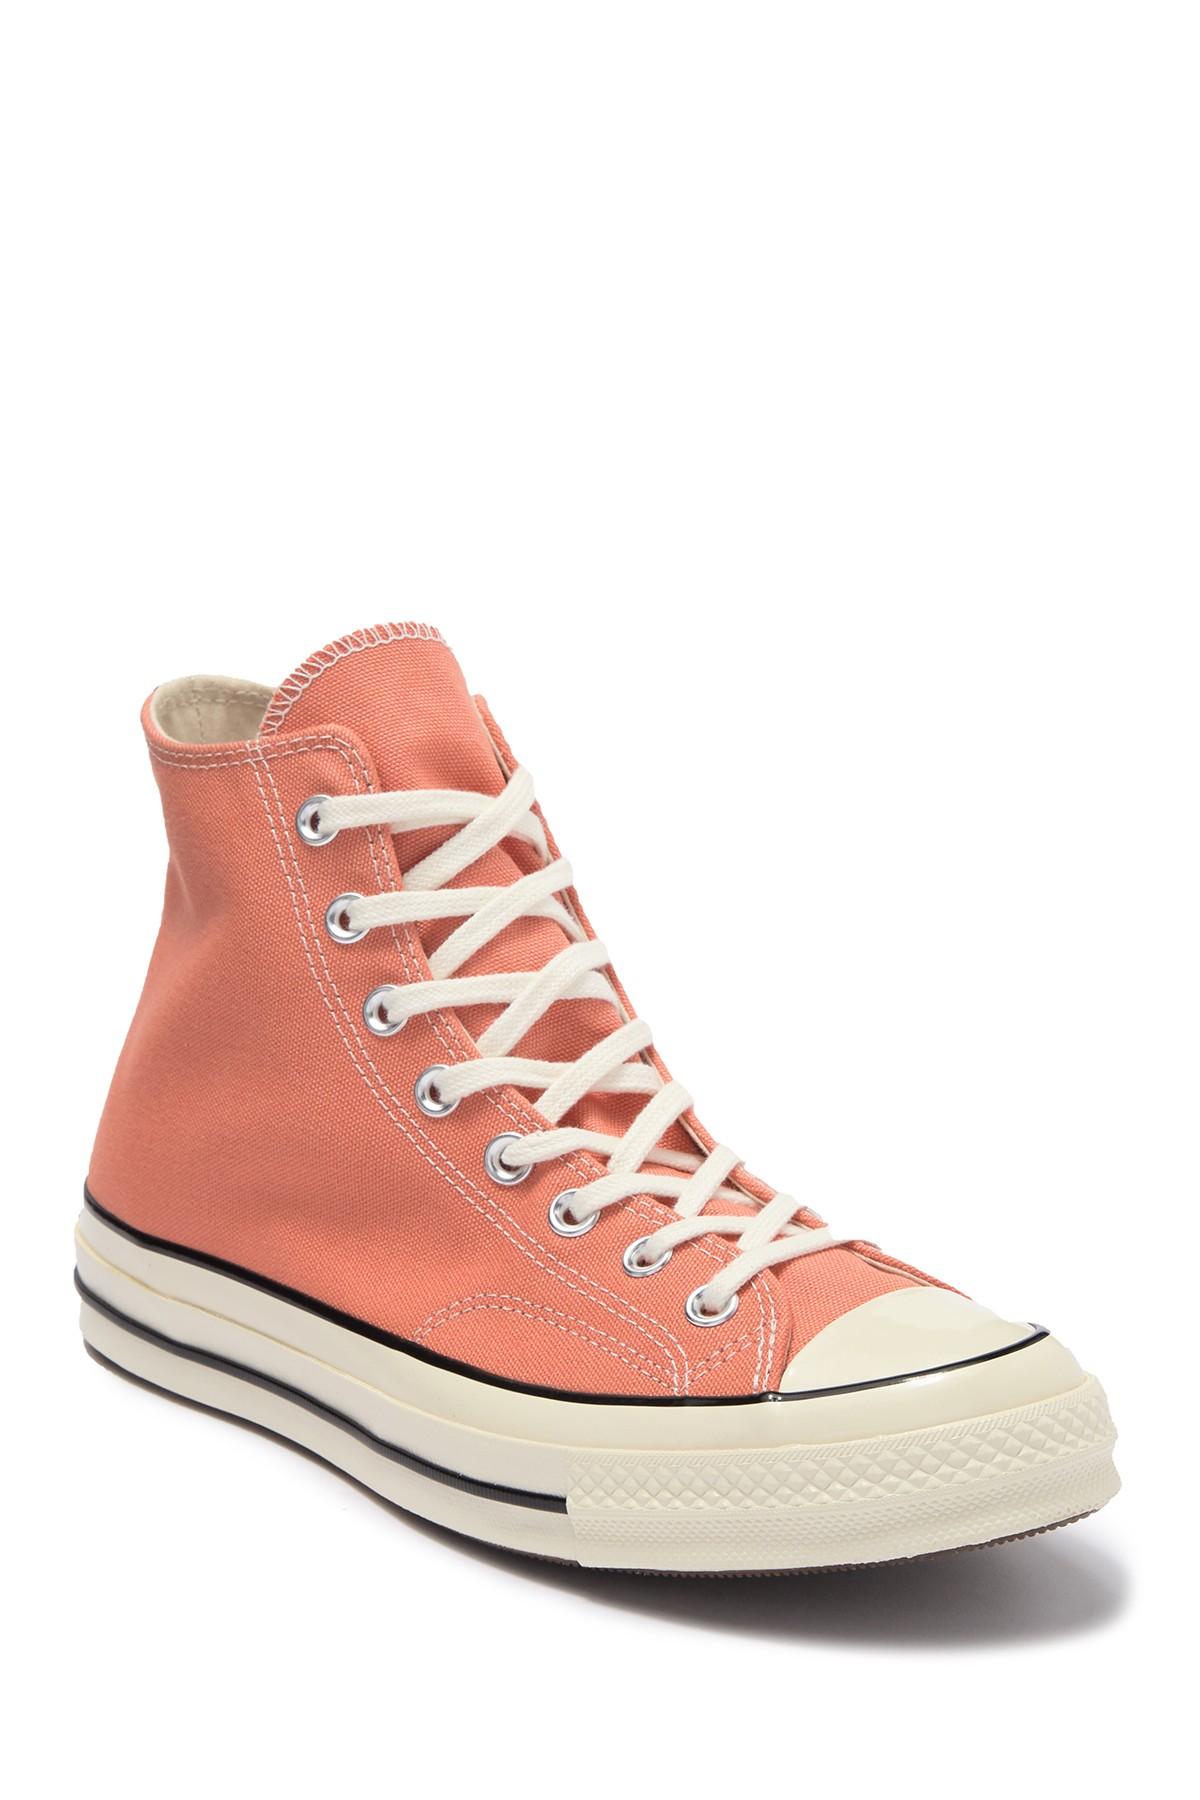 Converse Chuck 70 Hi Desert Peach Sneaker (unisex) for Men | Lyst